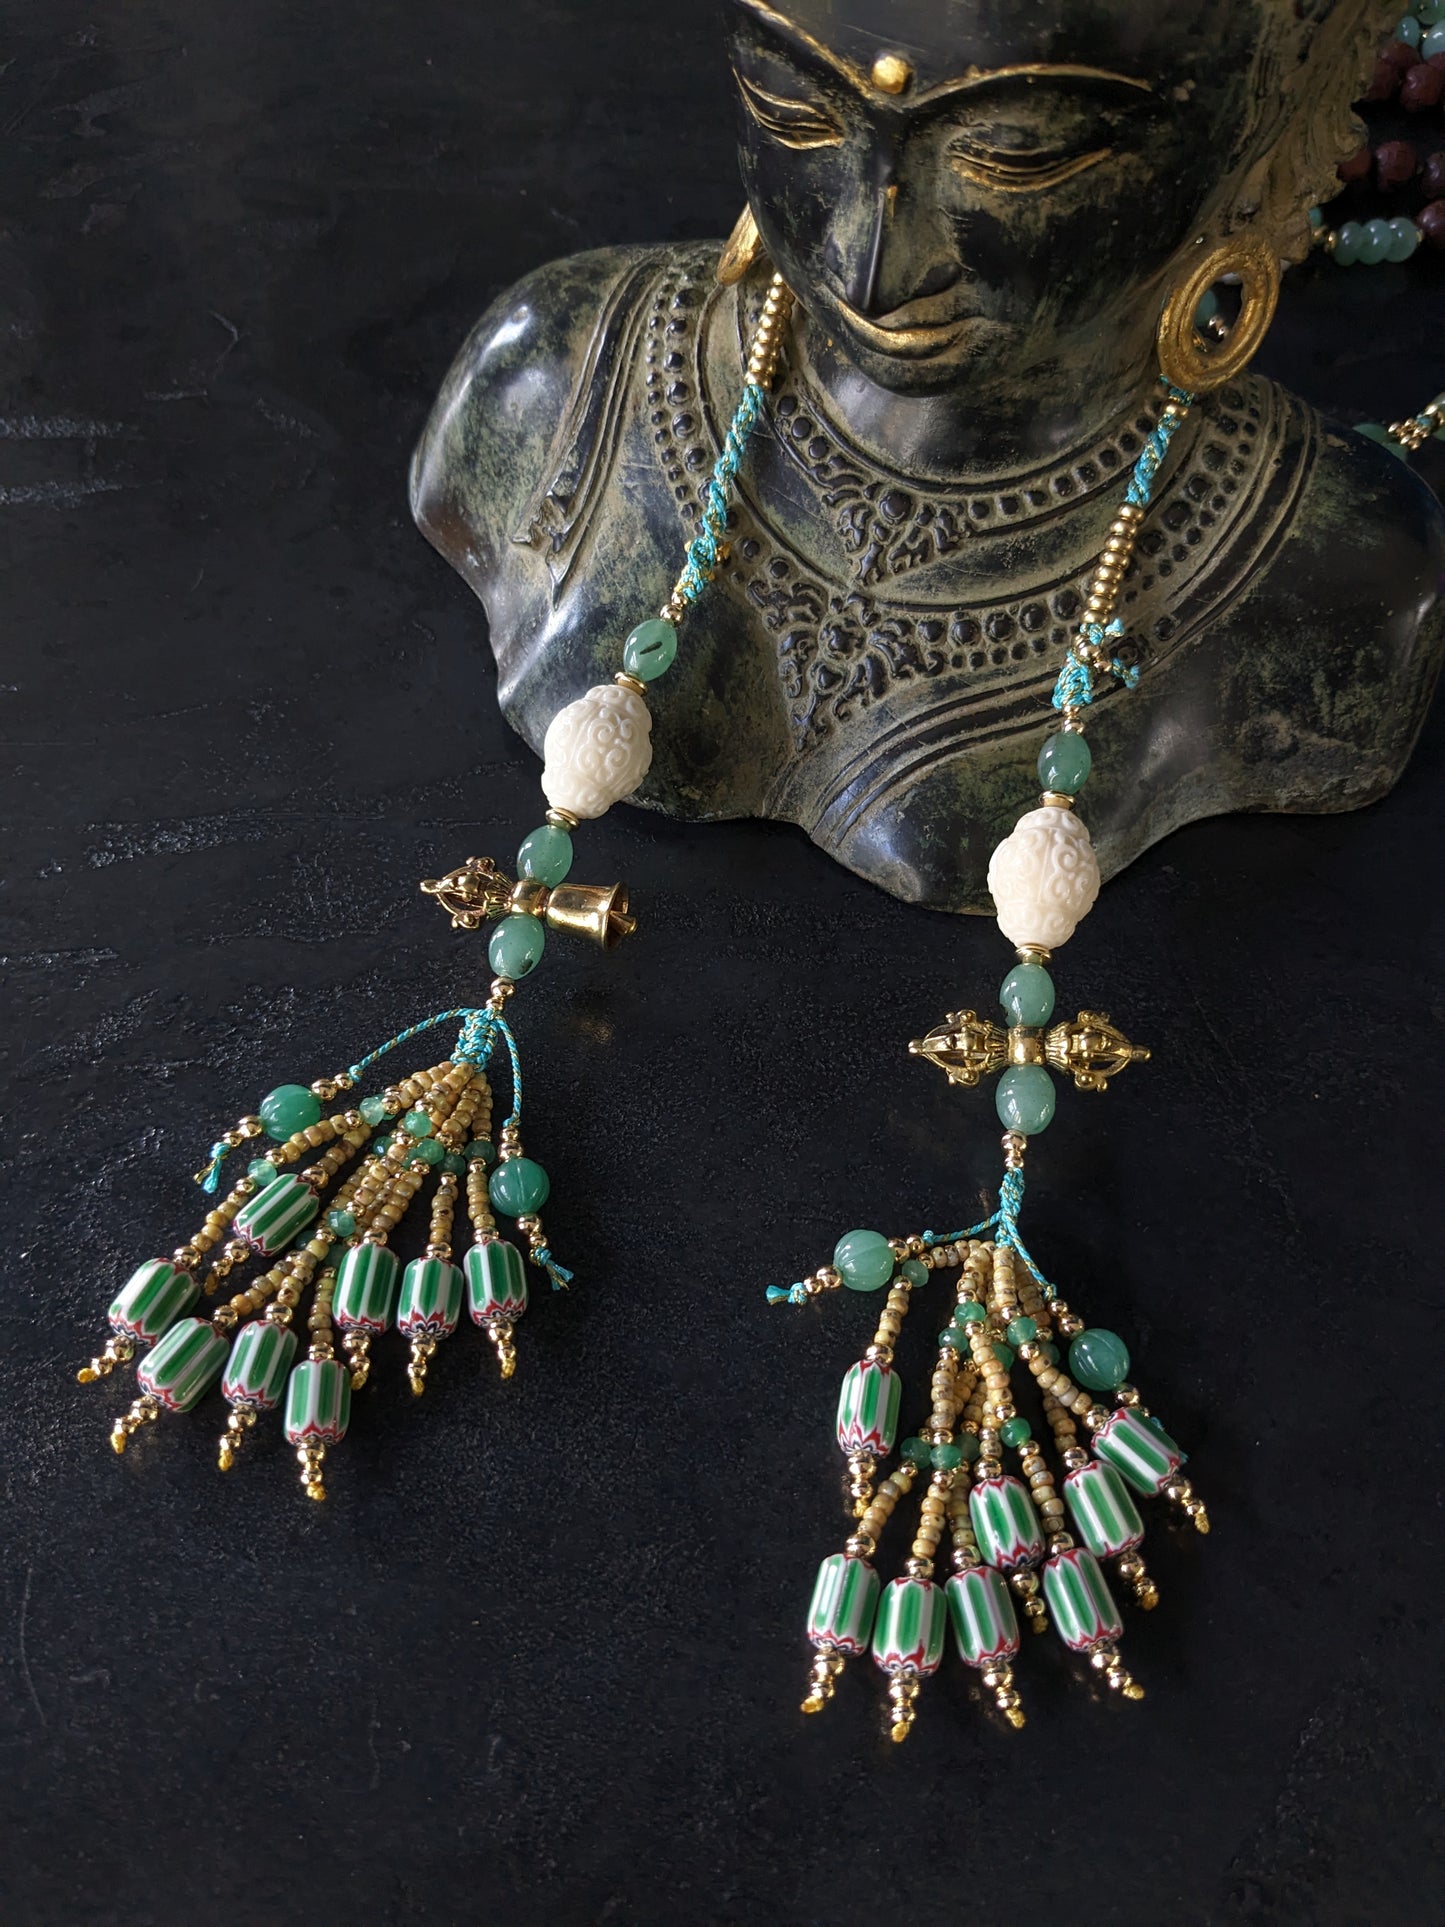 Chapelet bouddhiste Mala Kanchipuram artisanal, orné de perles d'aventurine vertes éclatantes et de bois de santal rouge riche. Un bijou spirituel unique qui respire la chaleur et le savoir-faire.